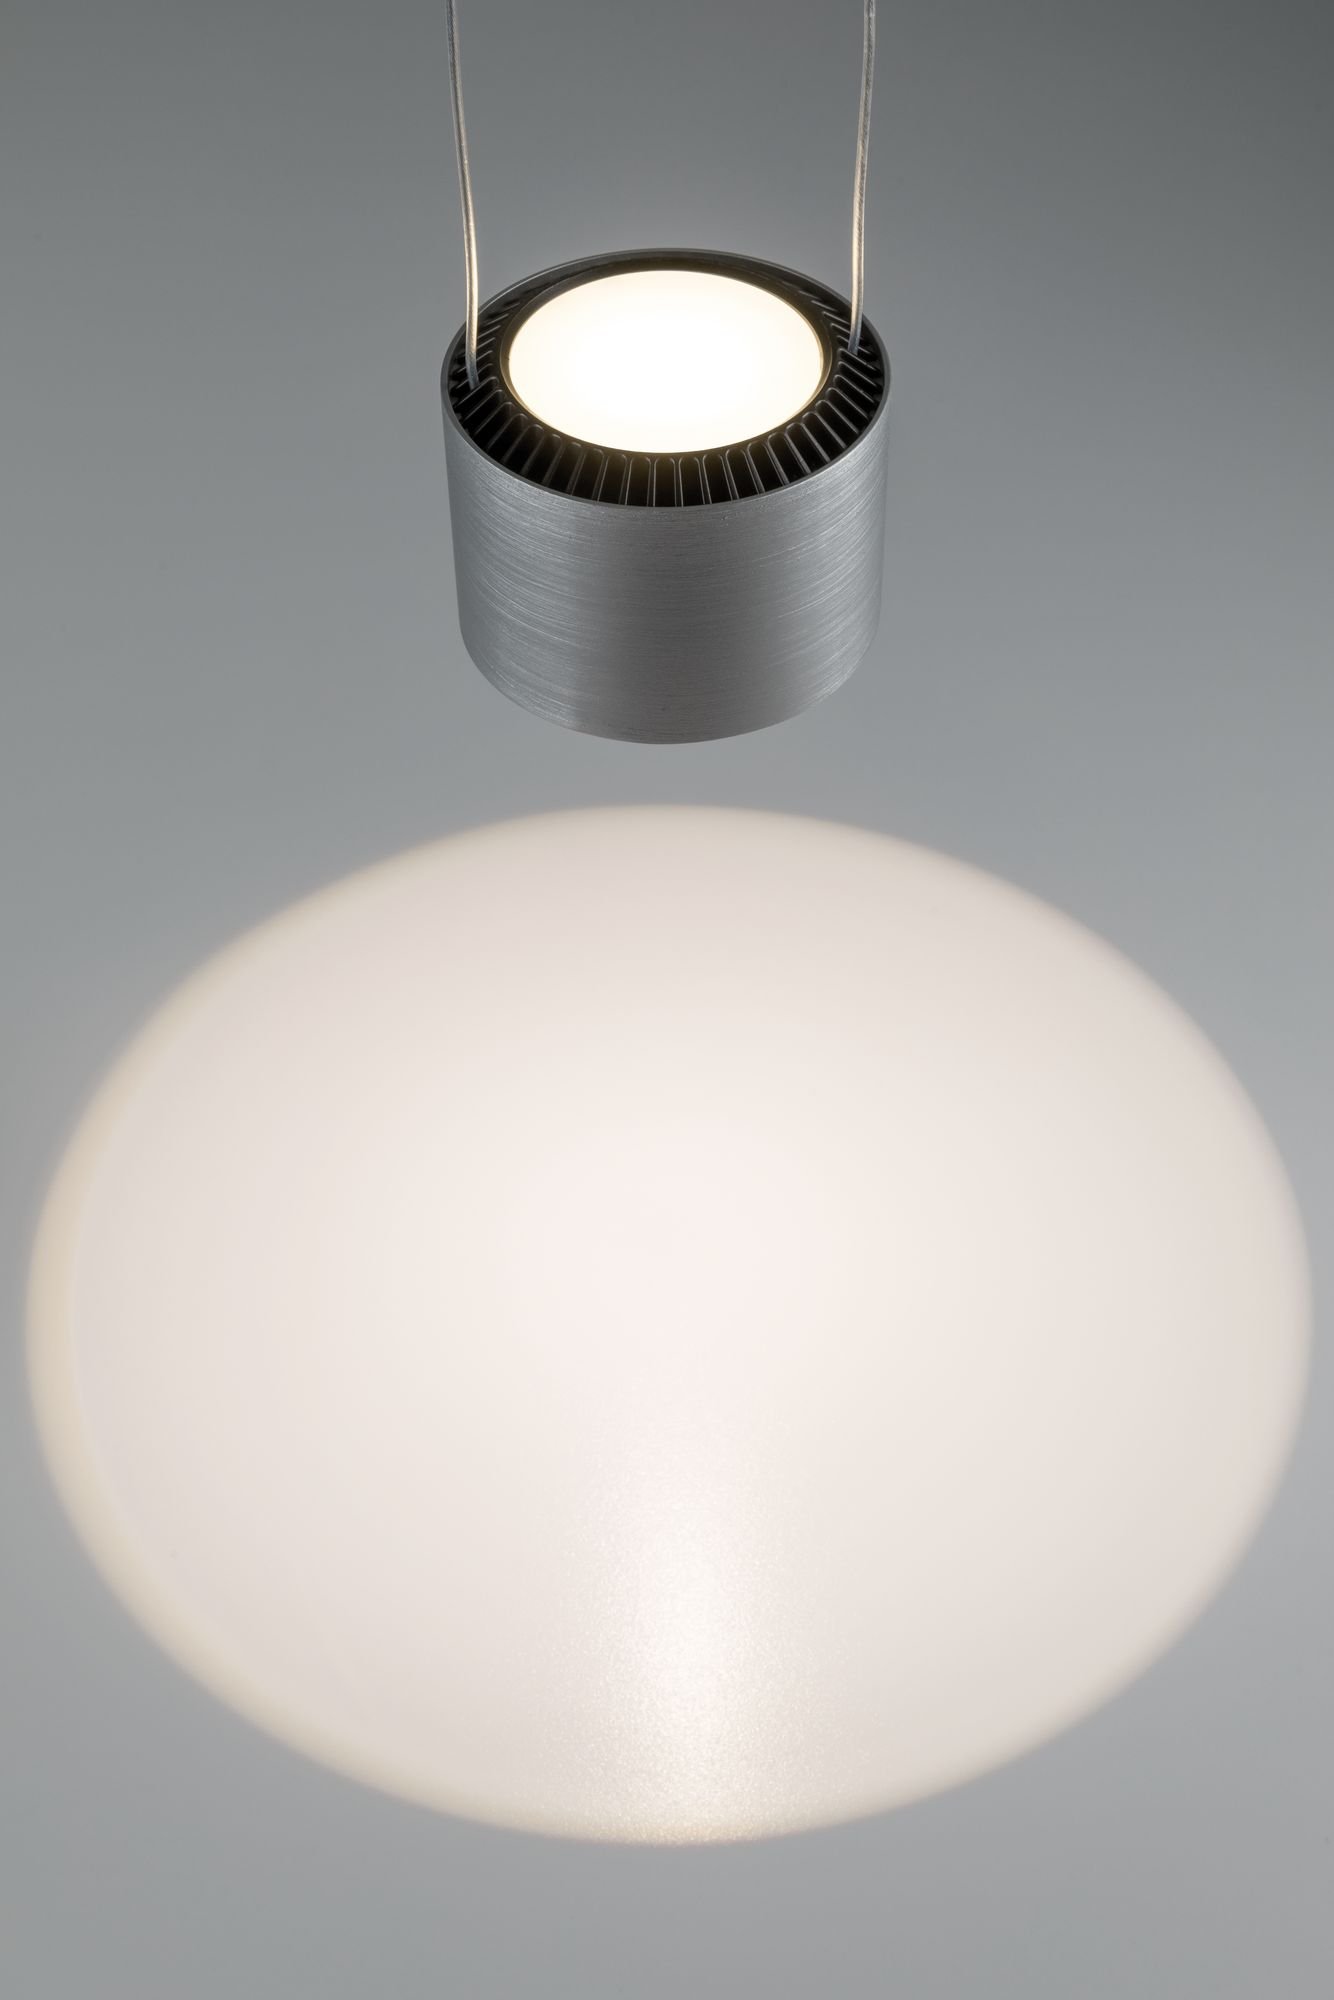 LED-hanglamp Aldan 2700K 880lm / 480lm 8,5 / 1x4,5W Zwart/Alu geborsteld dimbaar